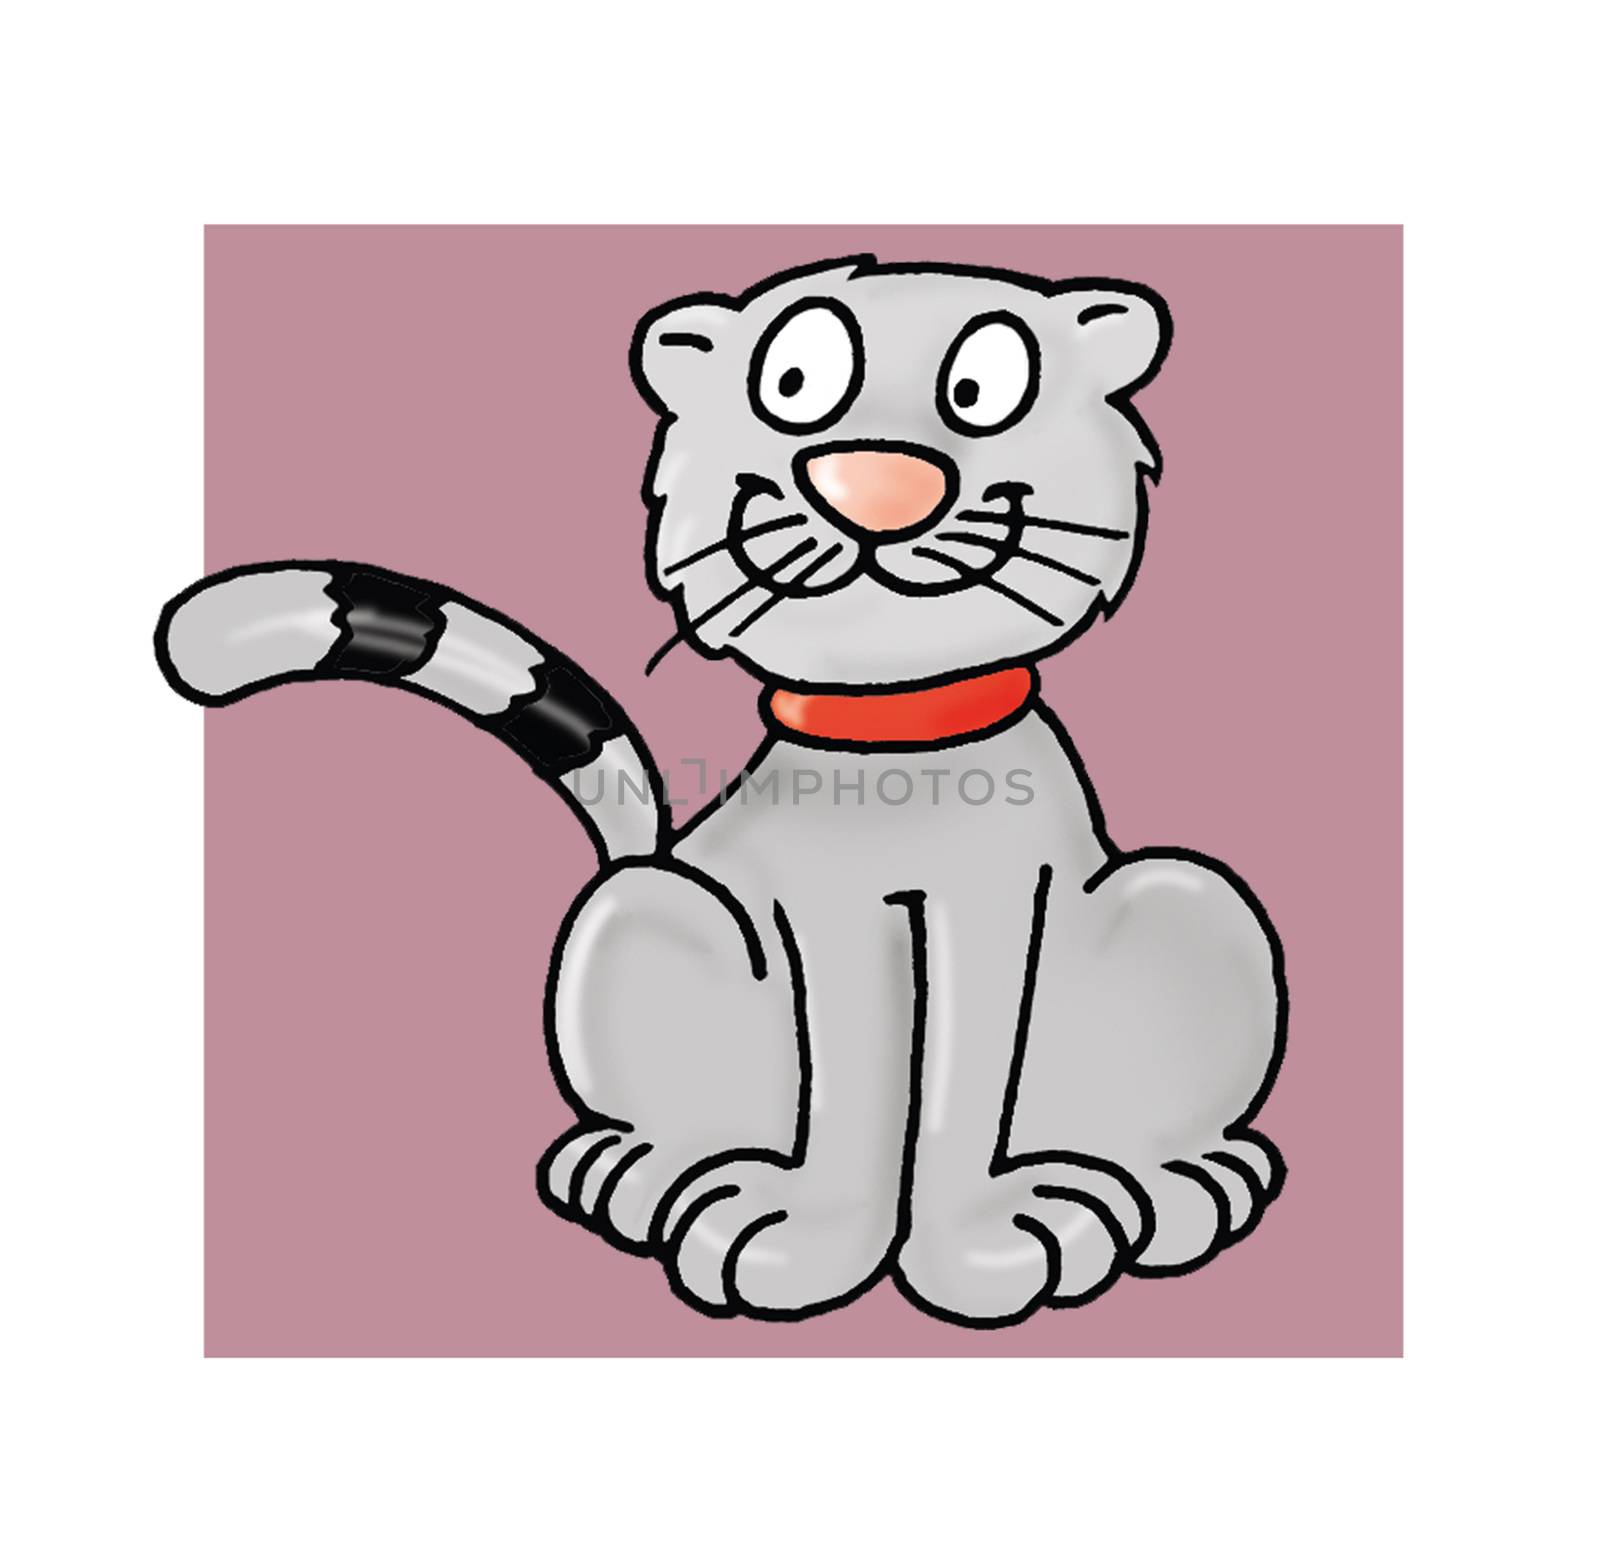 A mascot of a cat